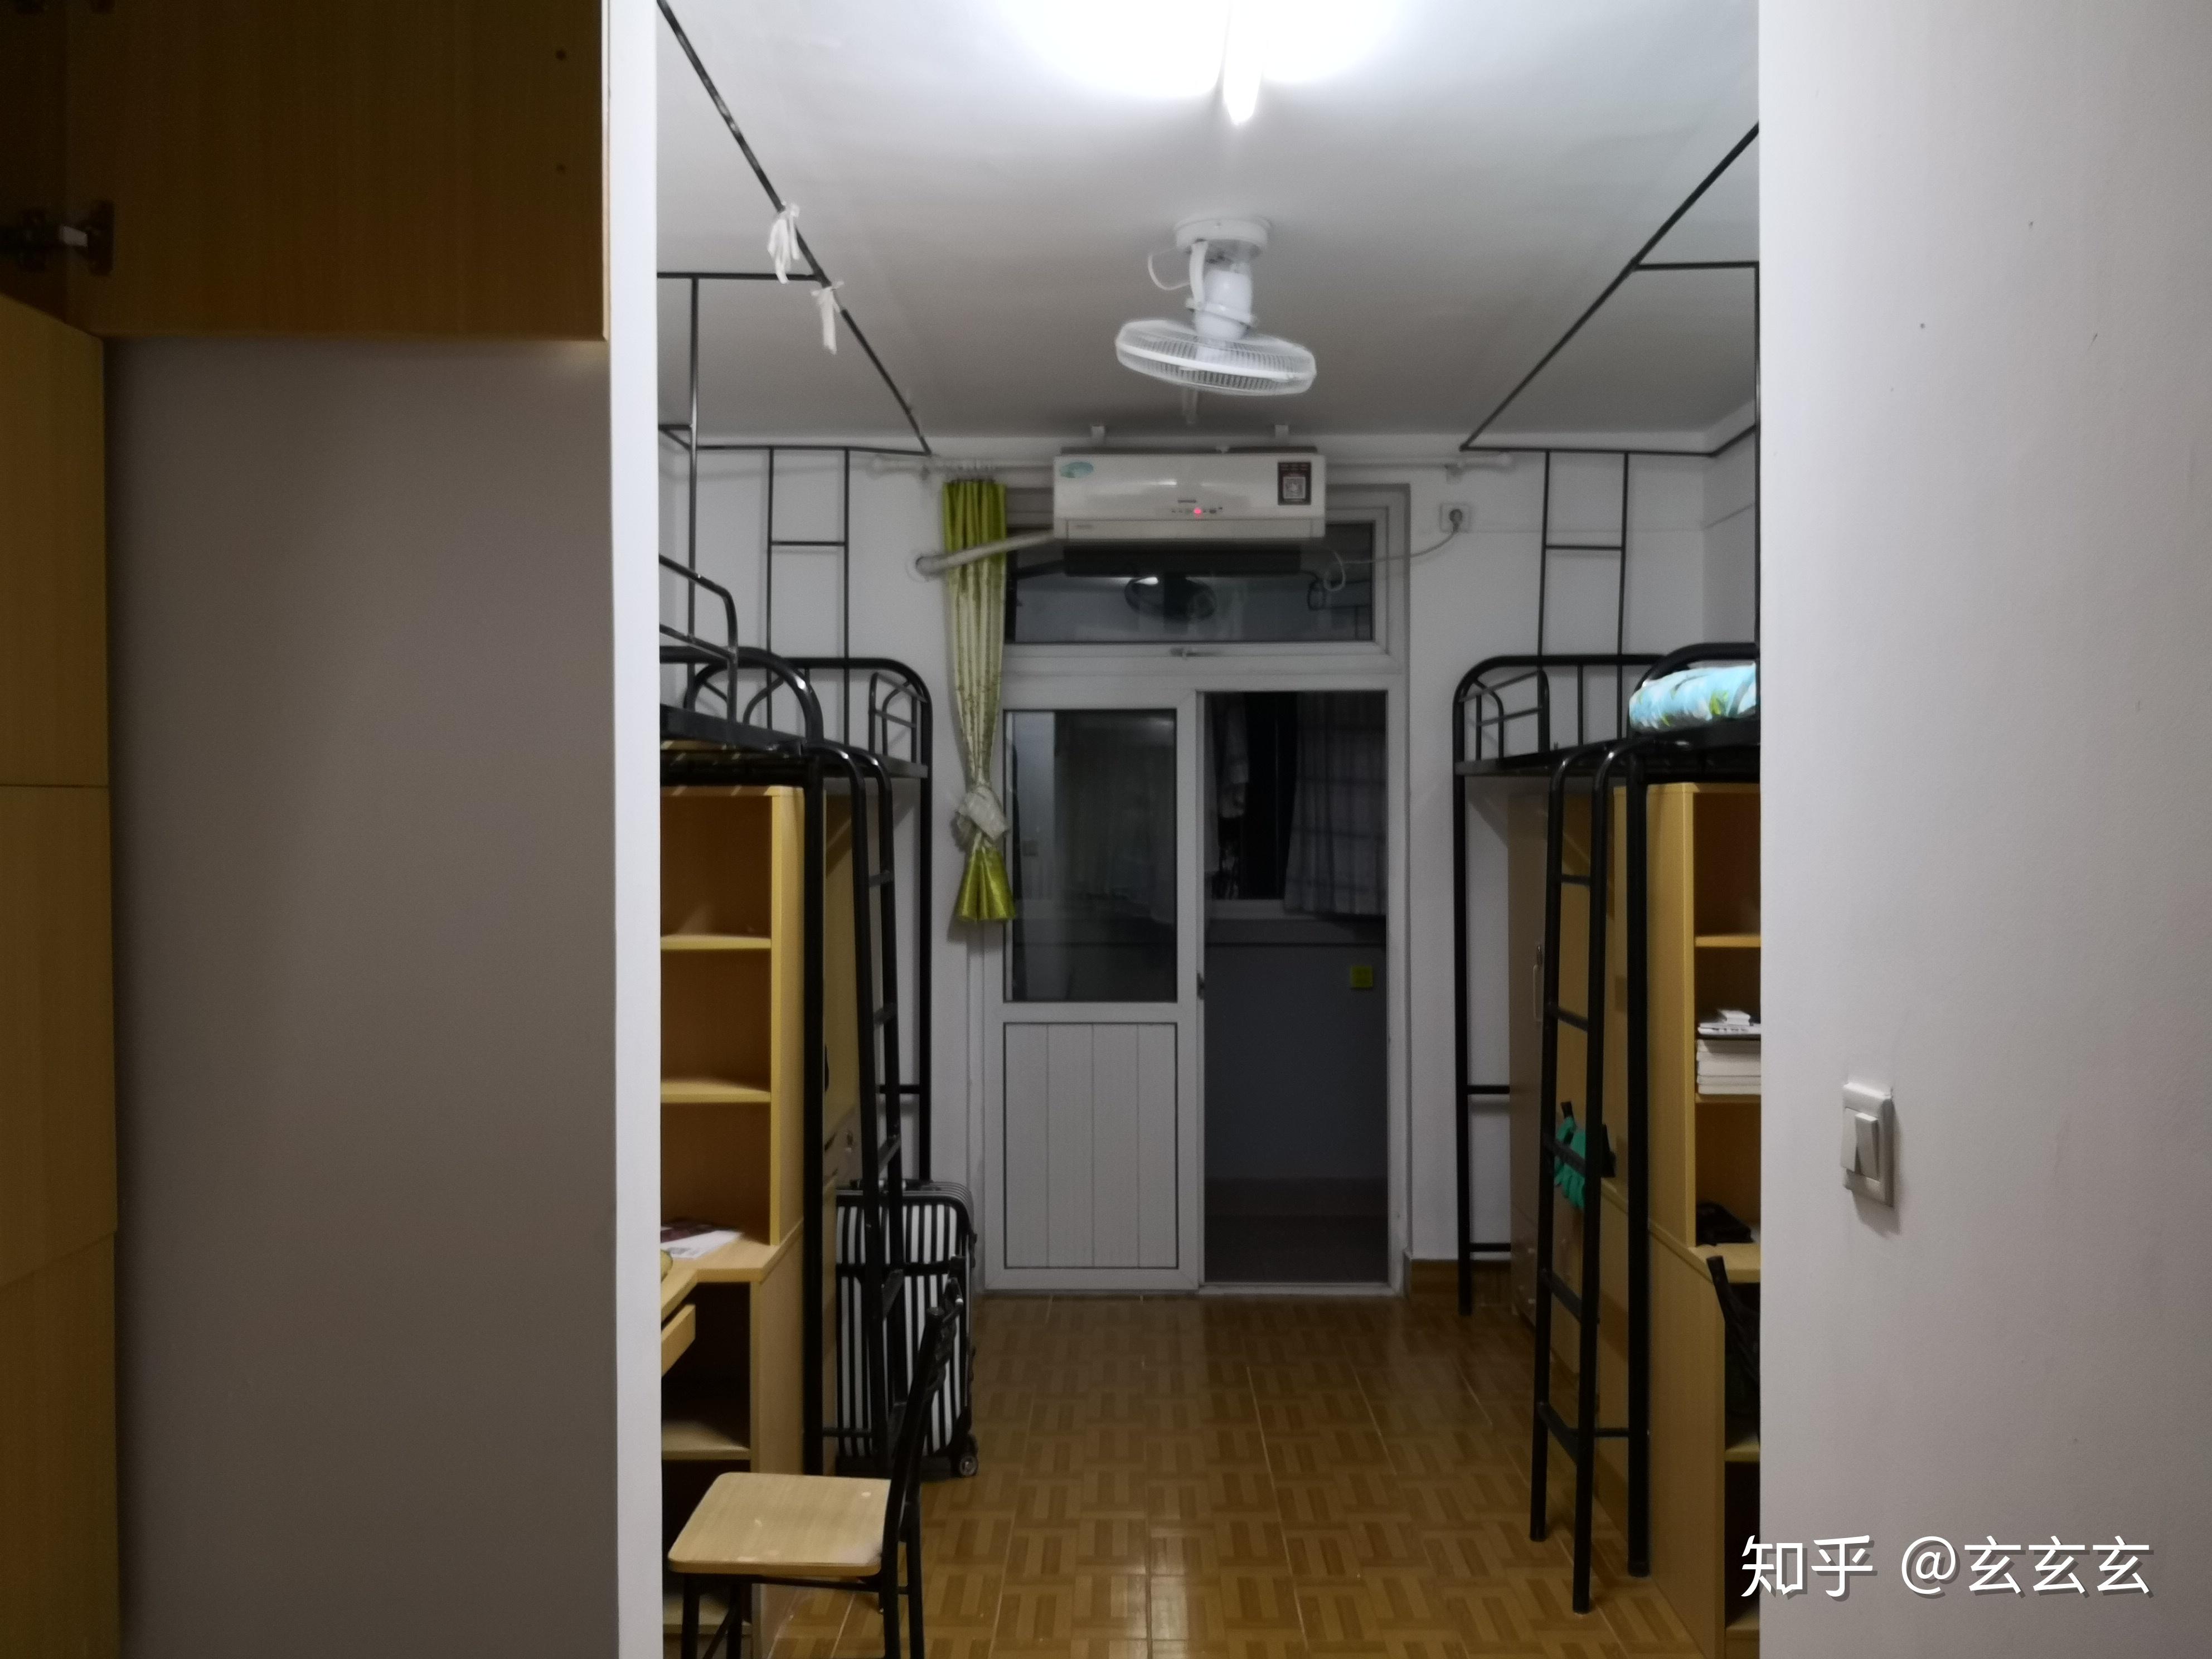 上海工程技术大学的宿舍条件如何？校区内有哪些生活设施？ - 知乎